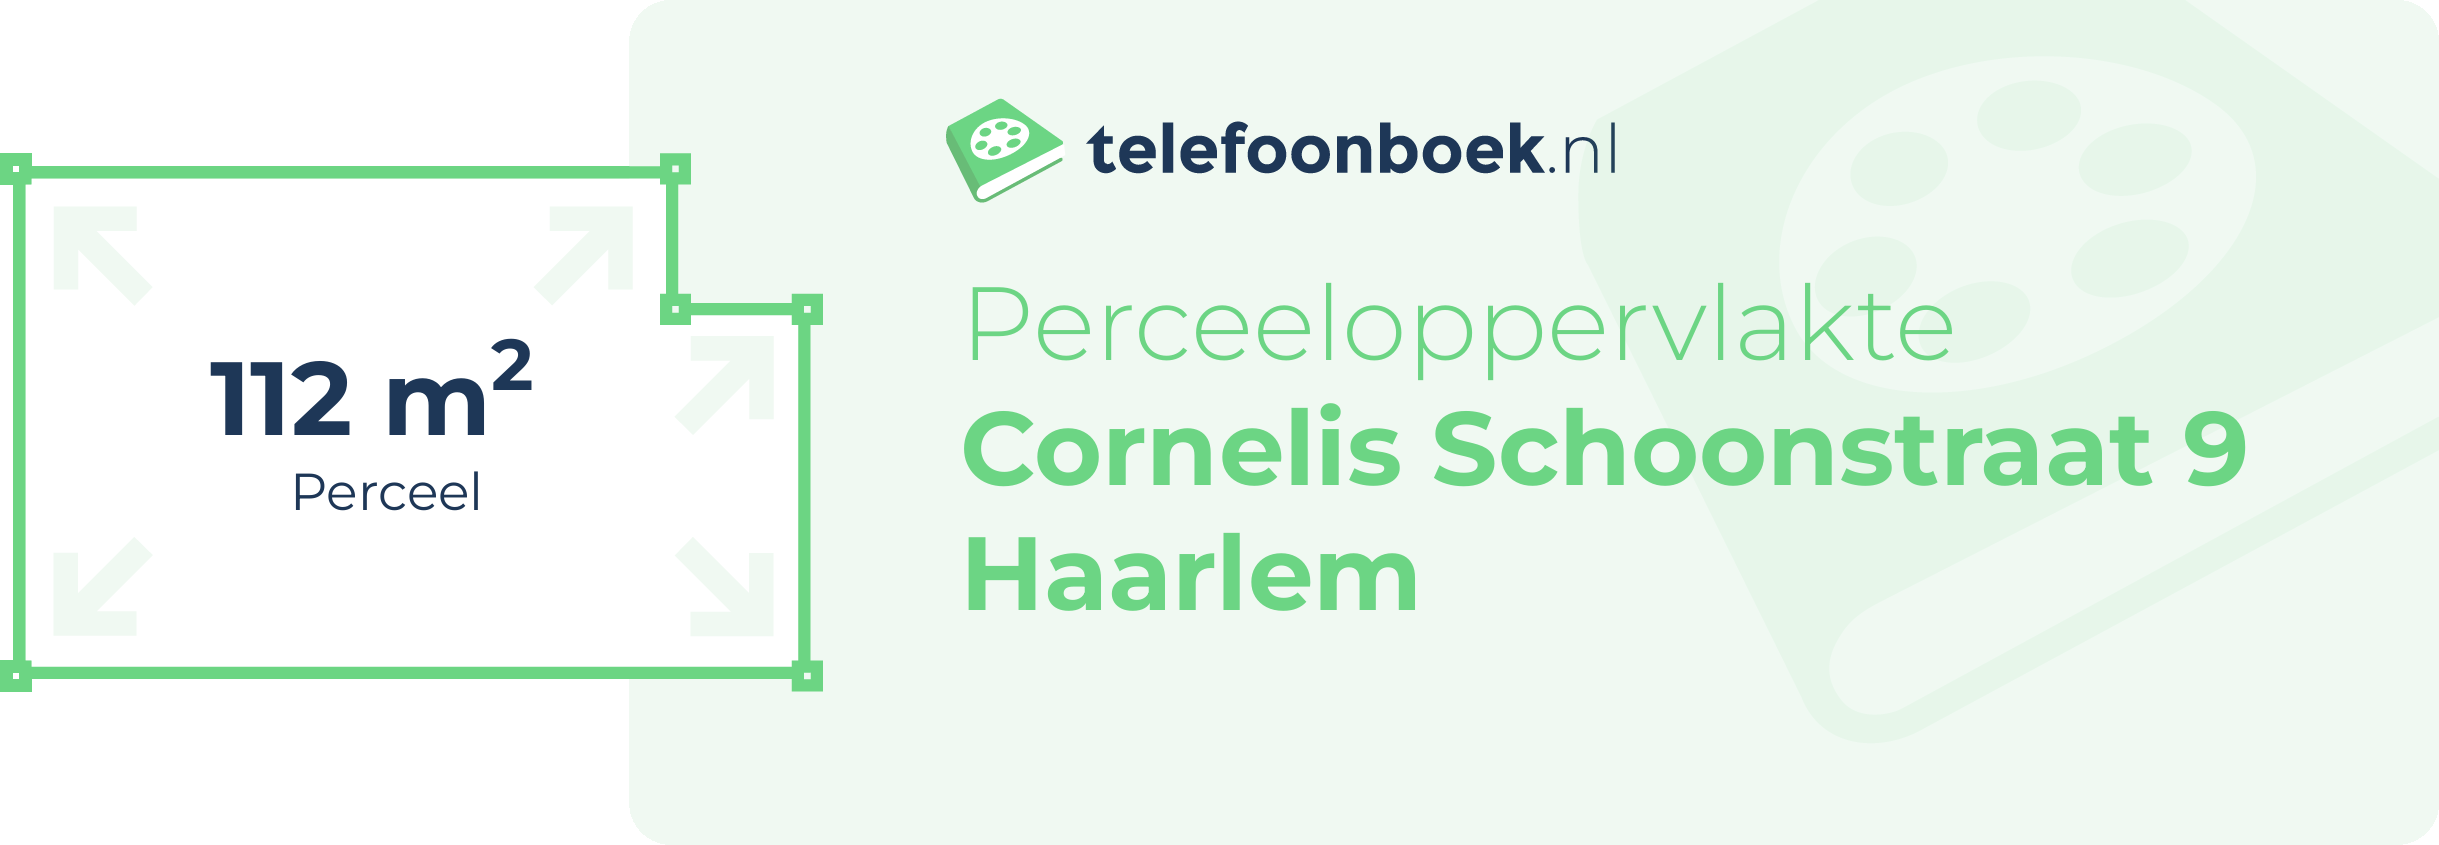 Perceeloppervlakte Cornelis Schoonstraat 9 Haarlem